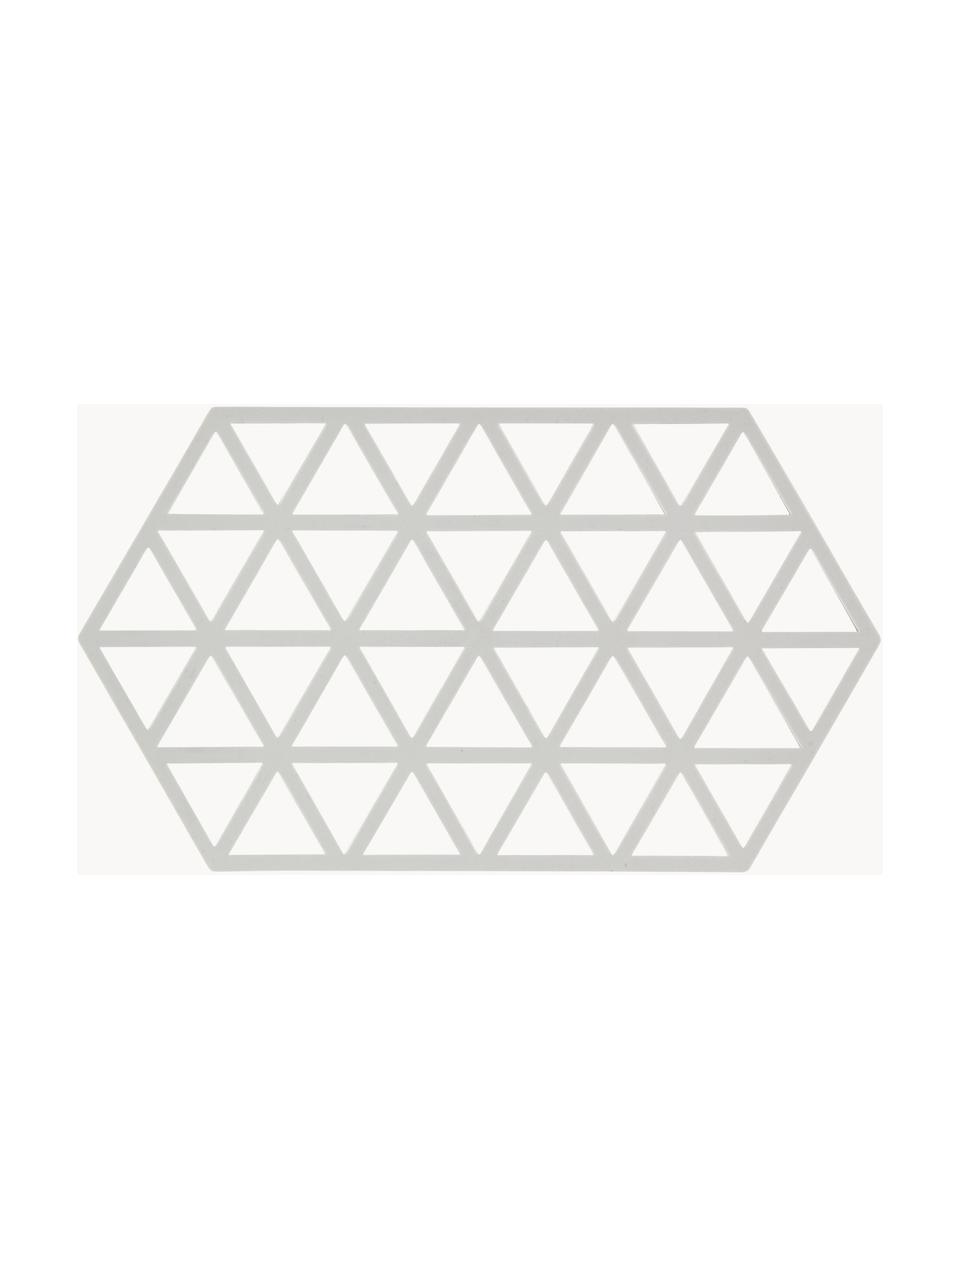 Sottopentola in silicone Triangle, Silicone, Grigio chiaro, Lung. 24 x Larg. 14 cm